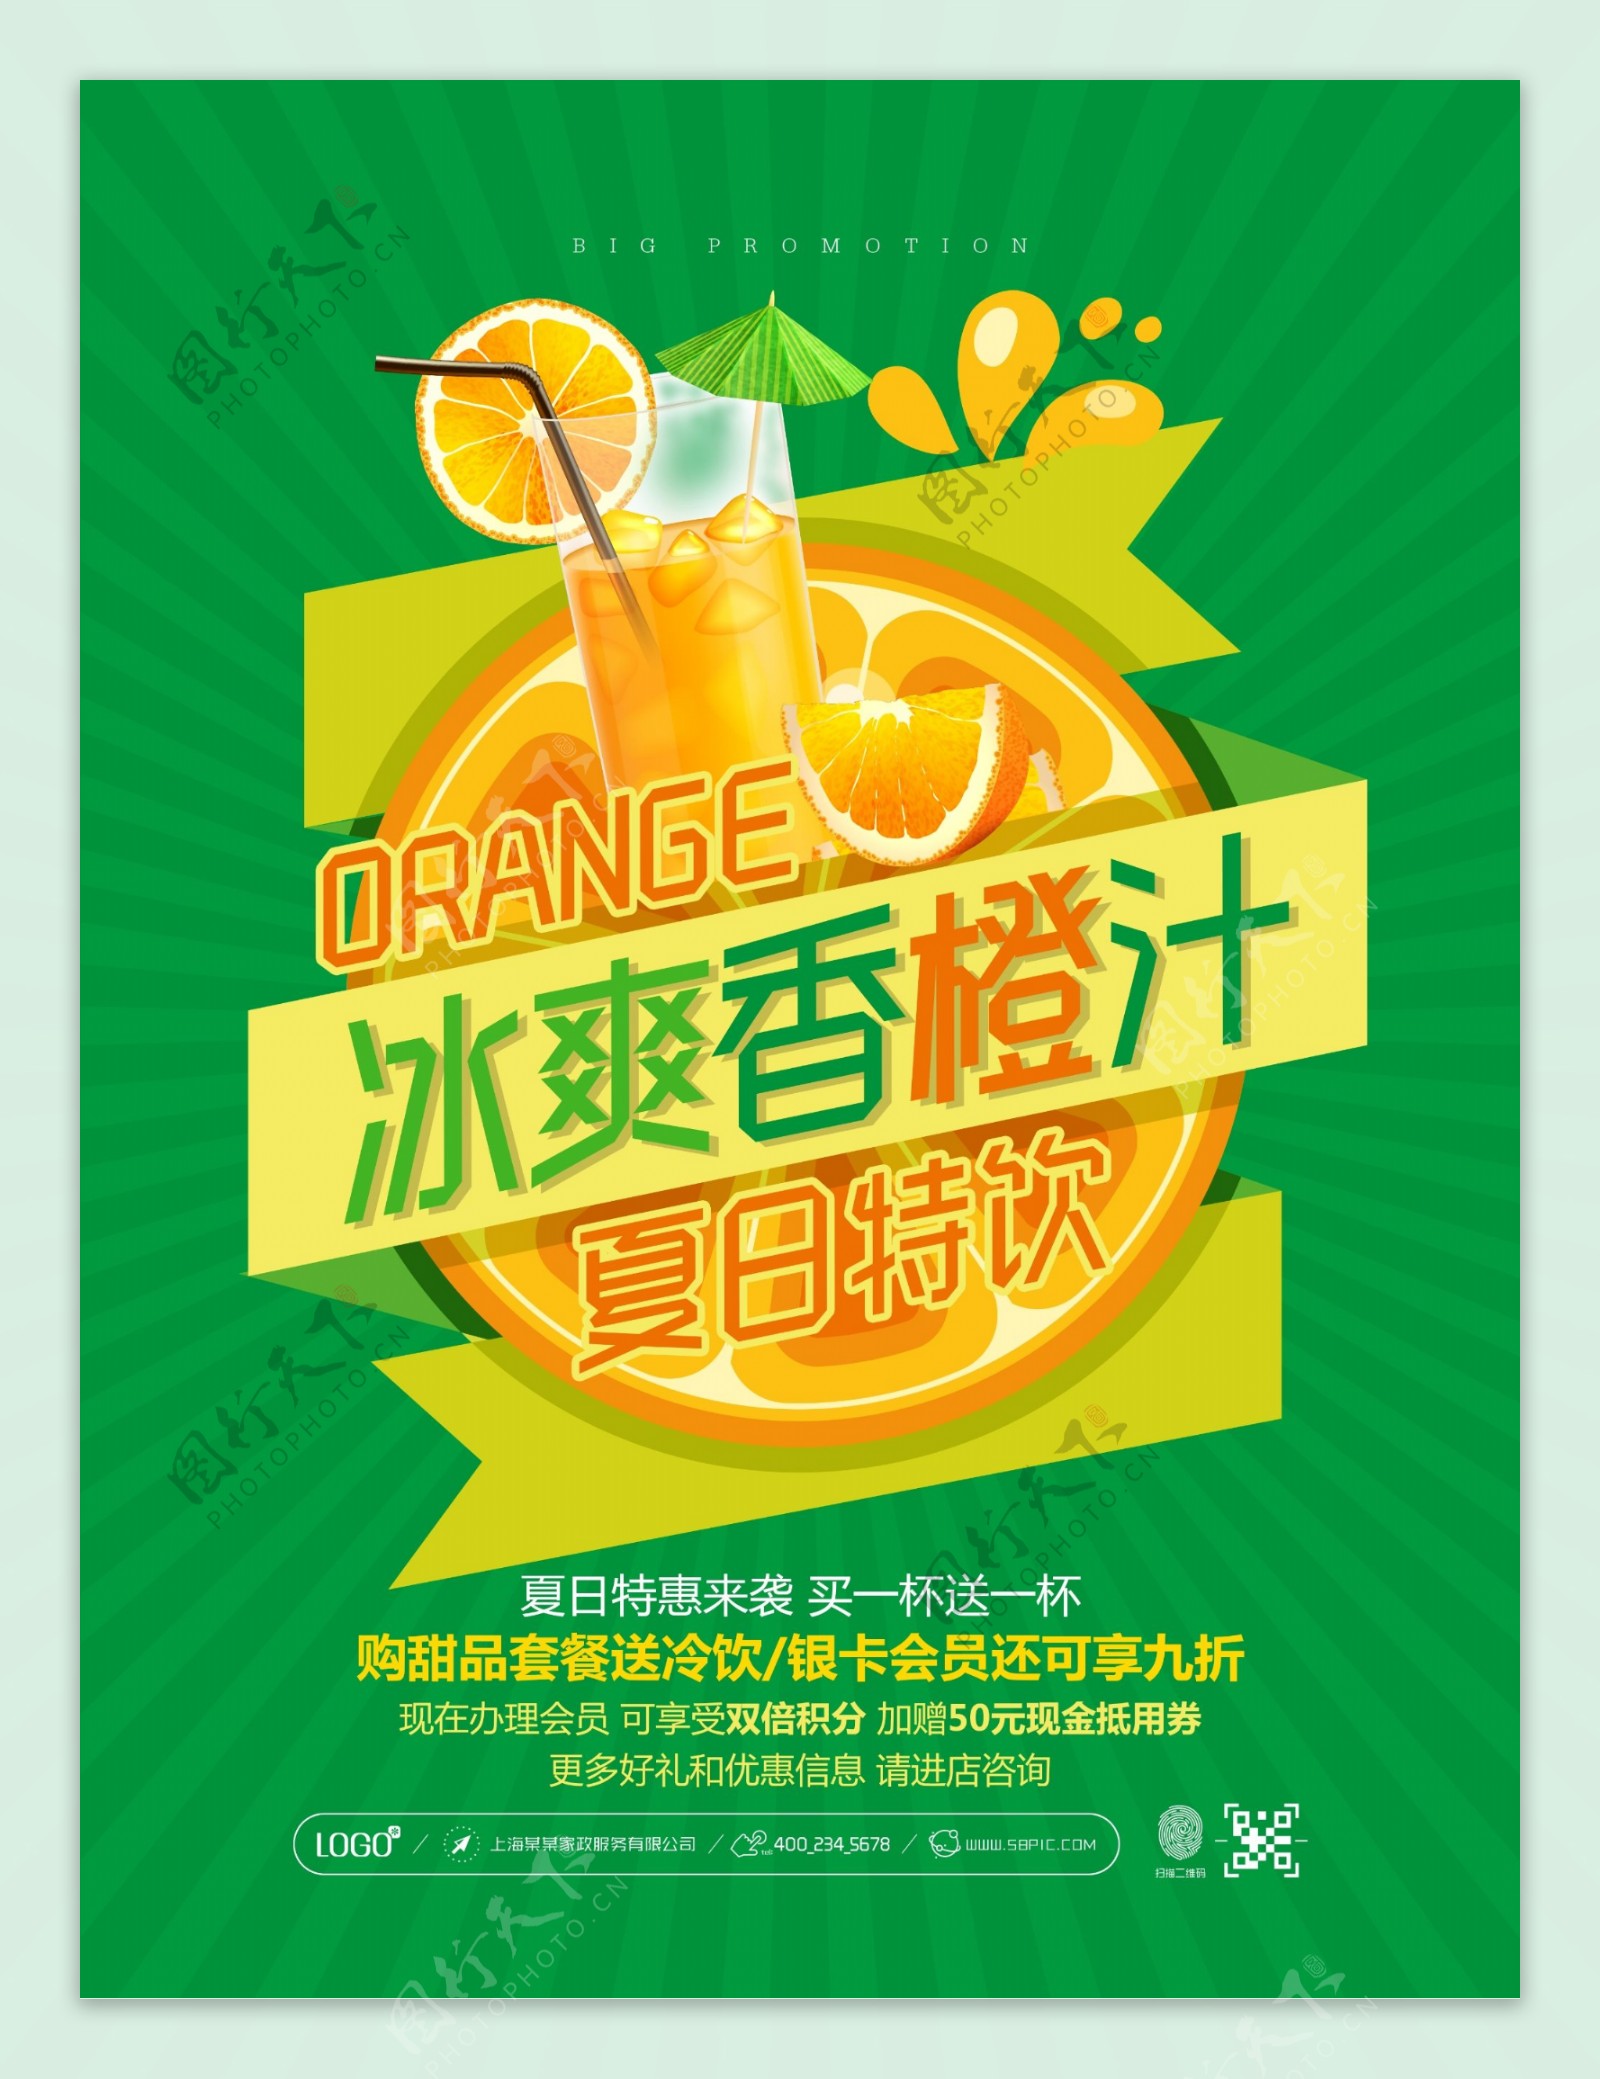 冰爽香橙汁促销宣传海报